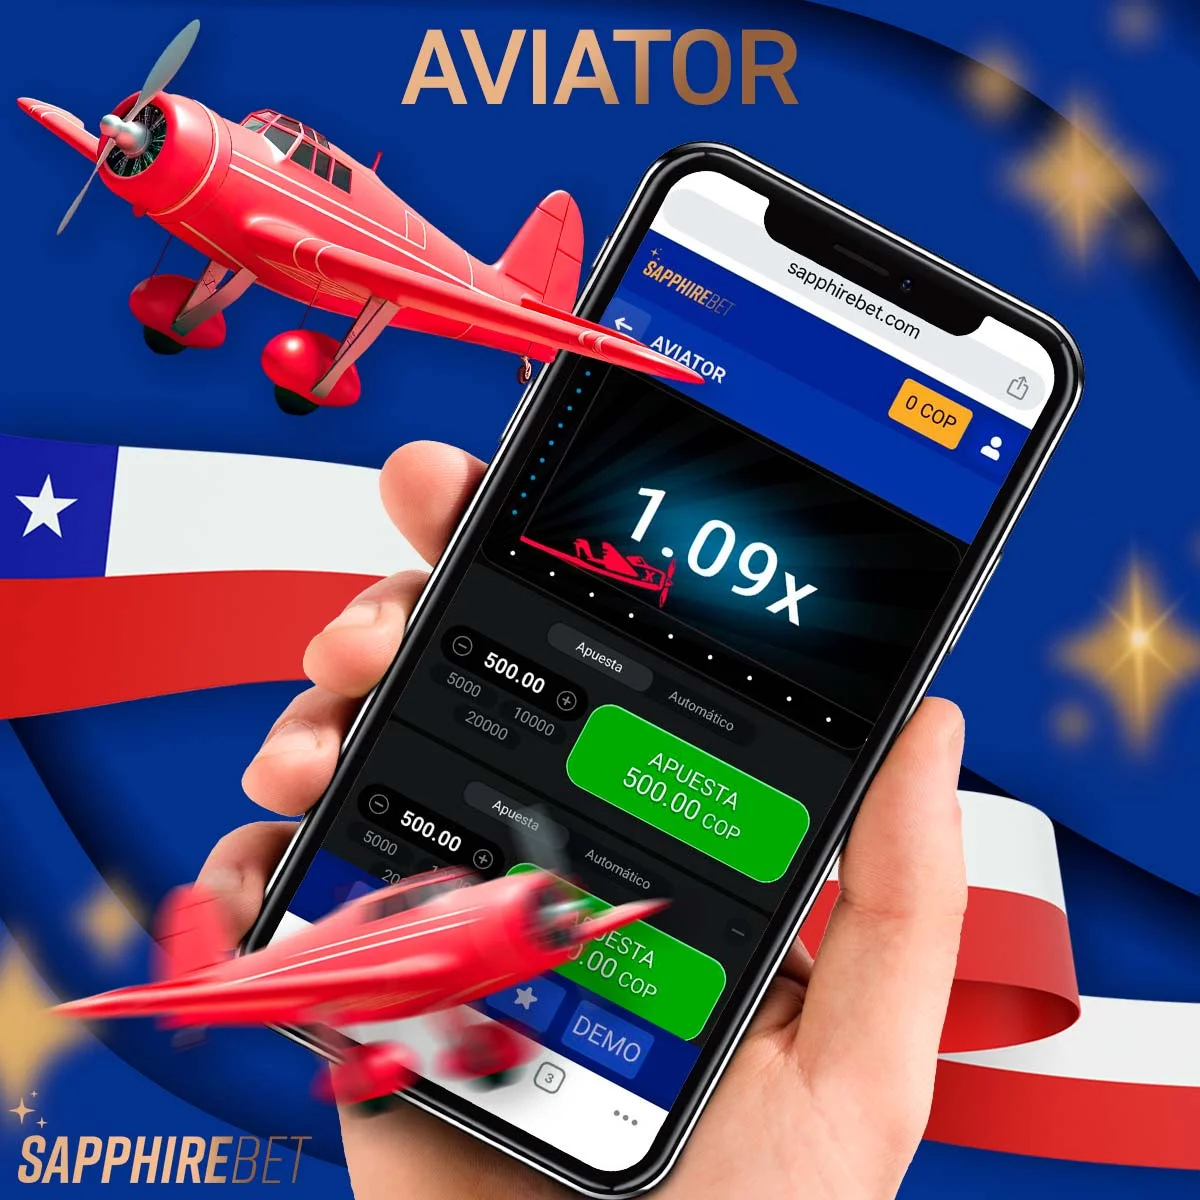 Un repaso al popular juego Aviator de Sapphirebet en Chile